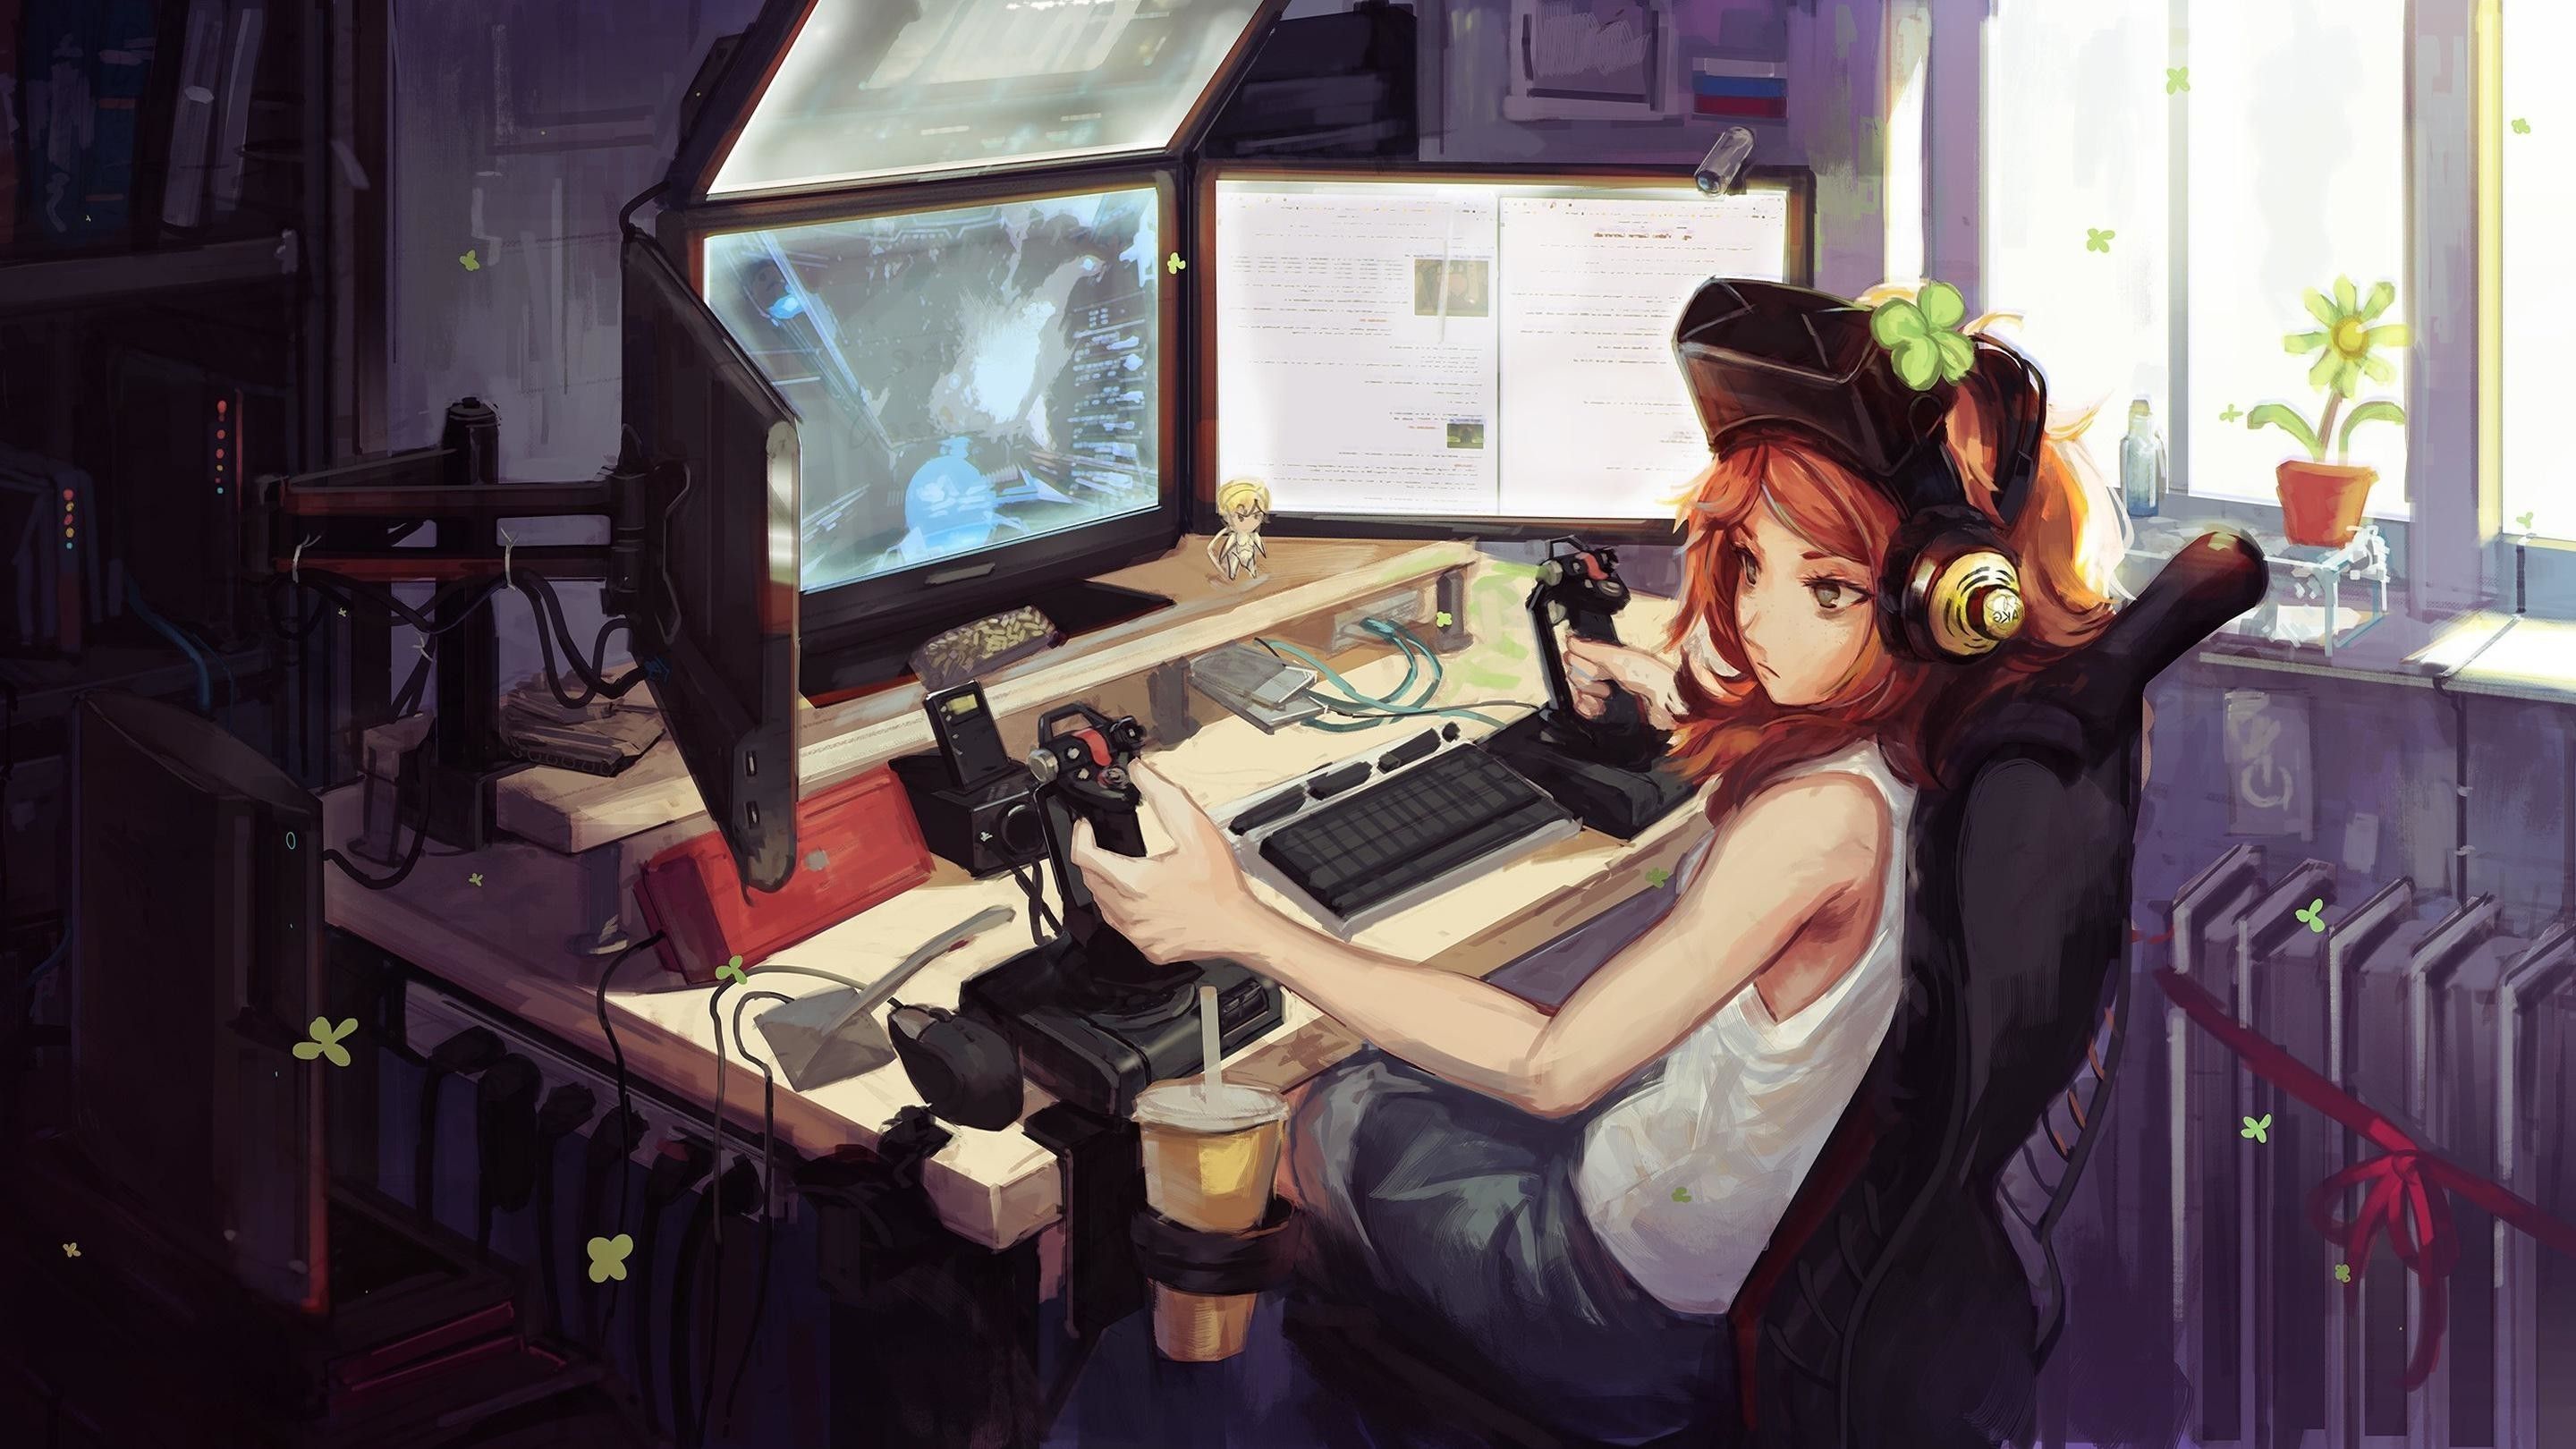 Gamer Girl Wallpaper (best Gamer Girl Wallpaper and image) on WallpaperChat